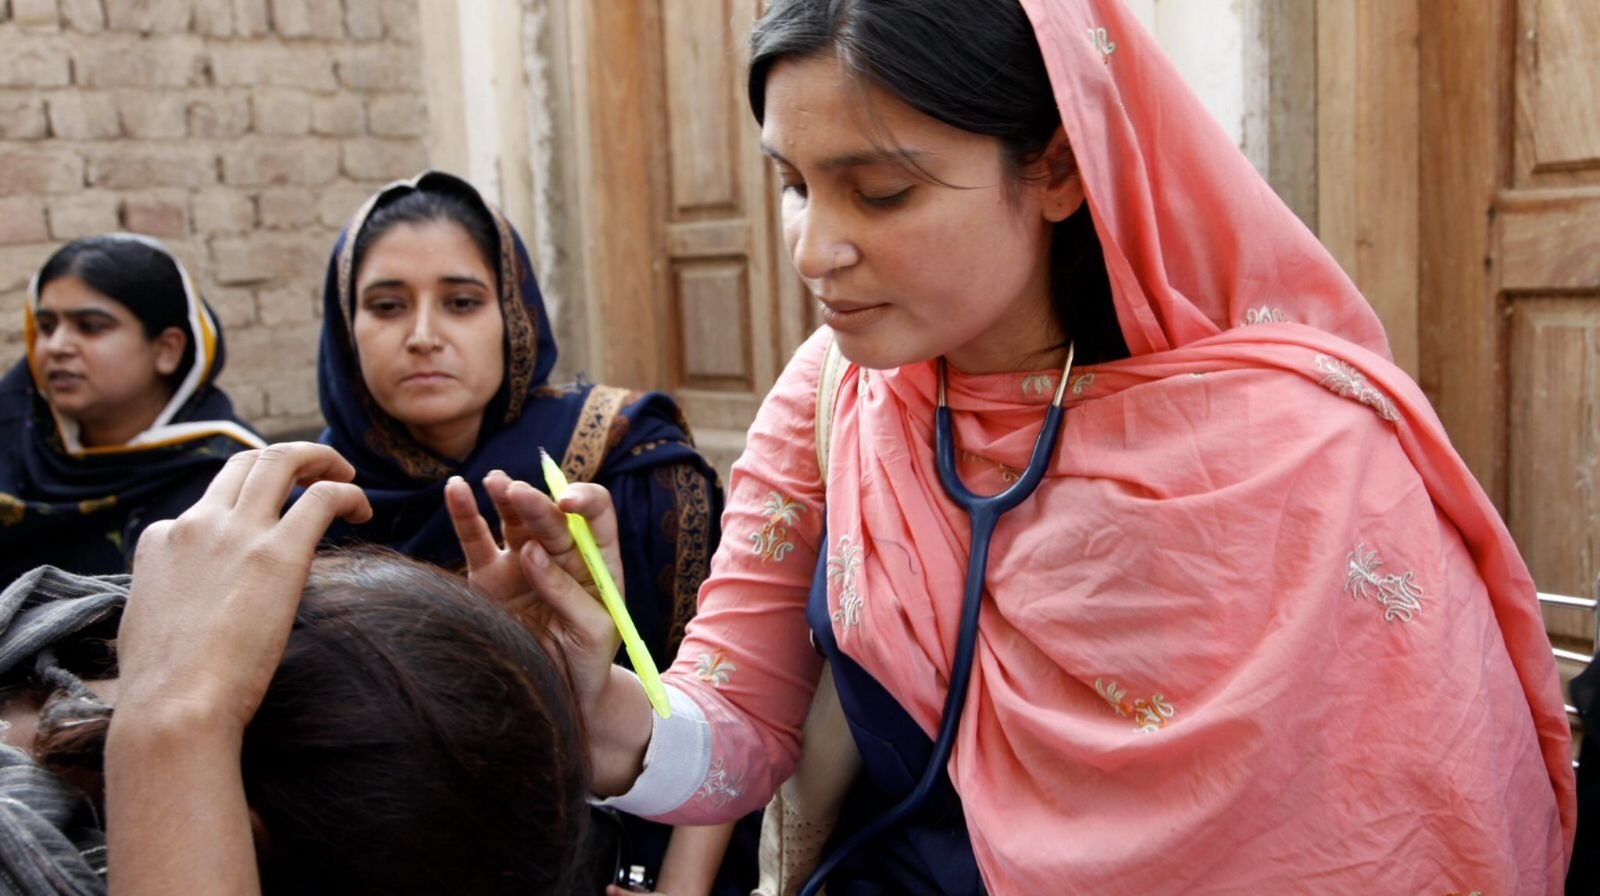 Cristã relata fé de mulheres perseguidas no Paquistão: “São embaixadoras de Cristo”